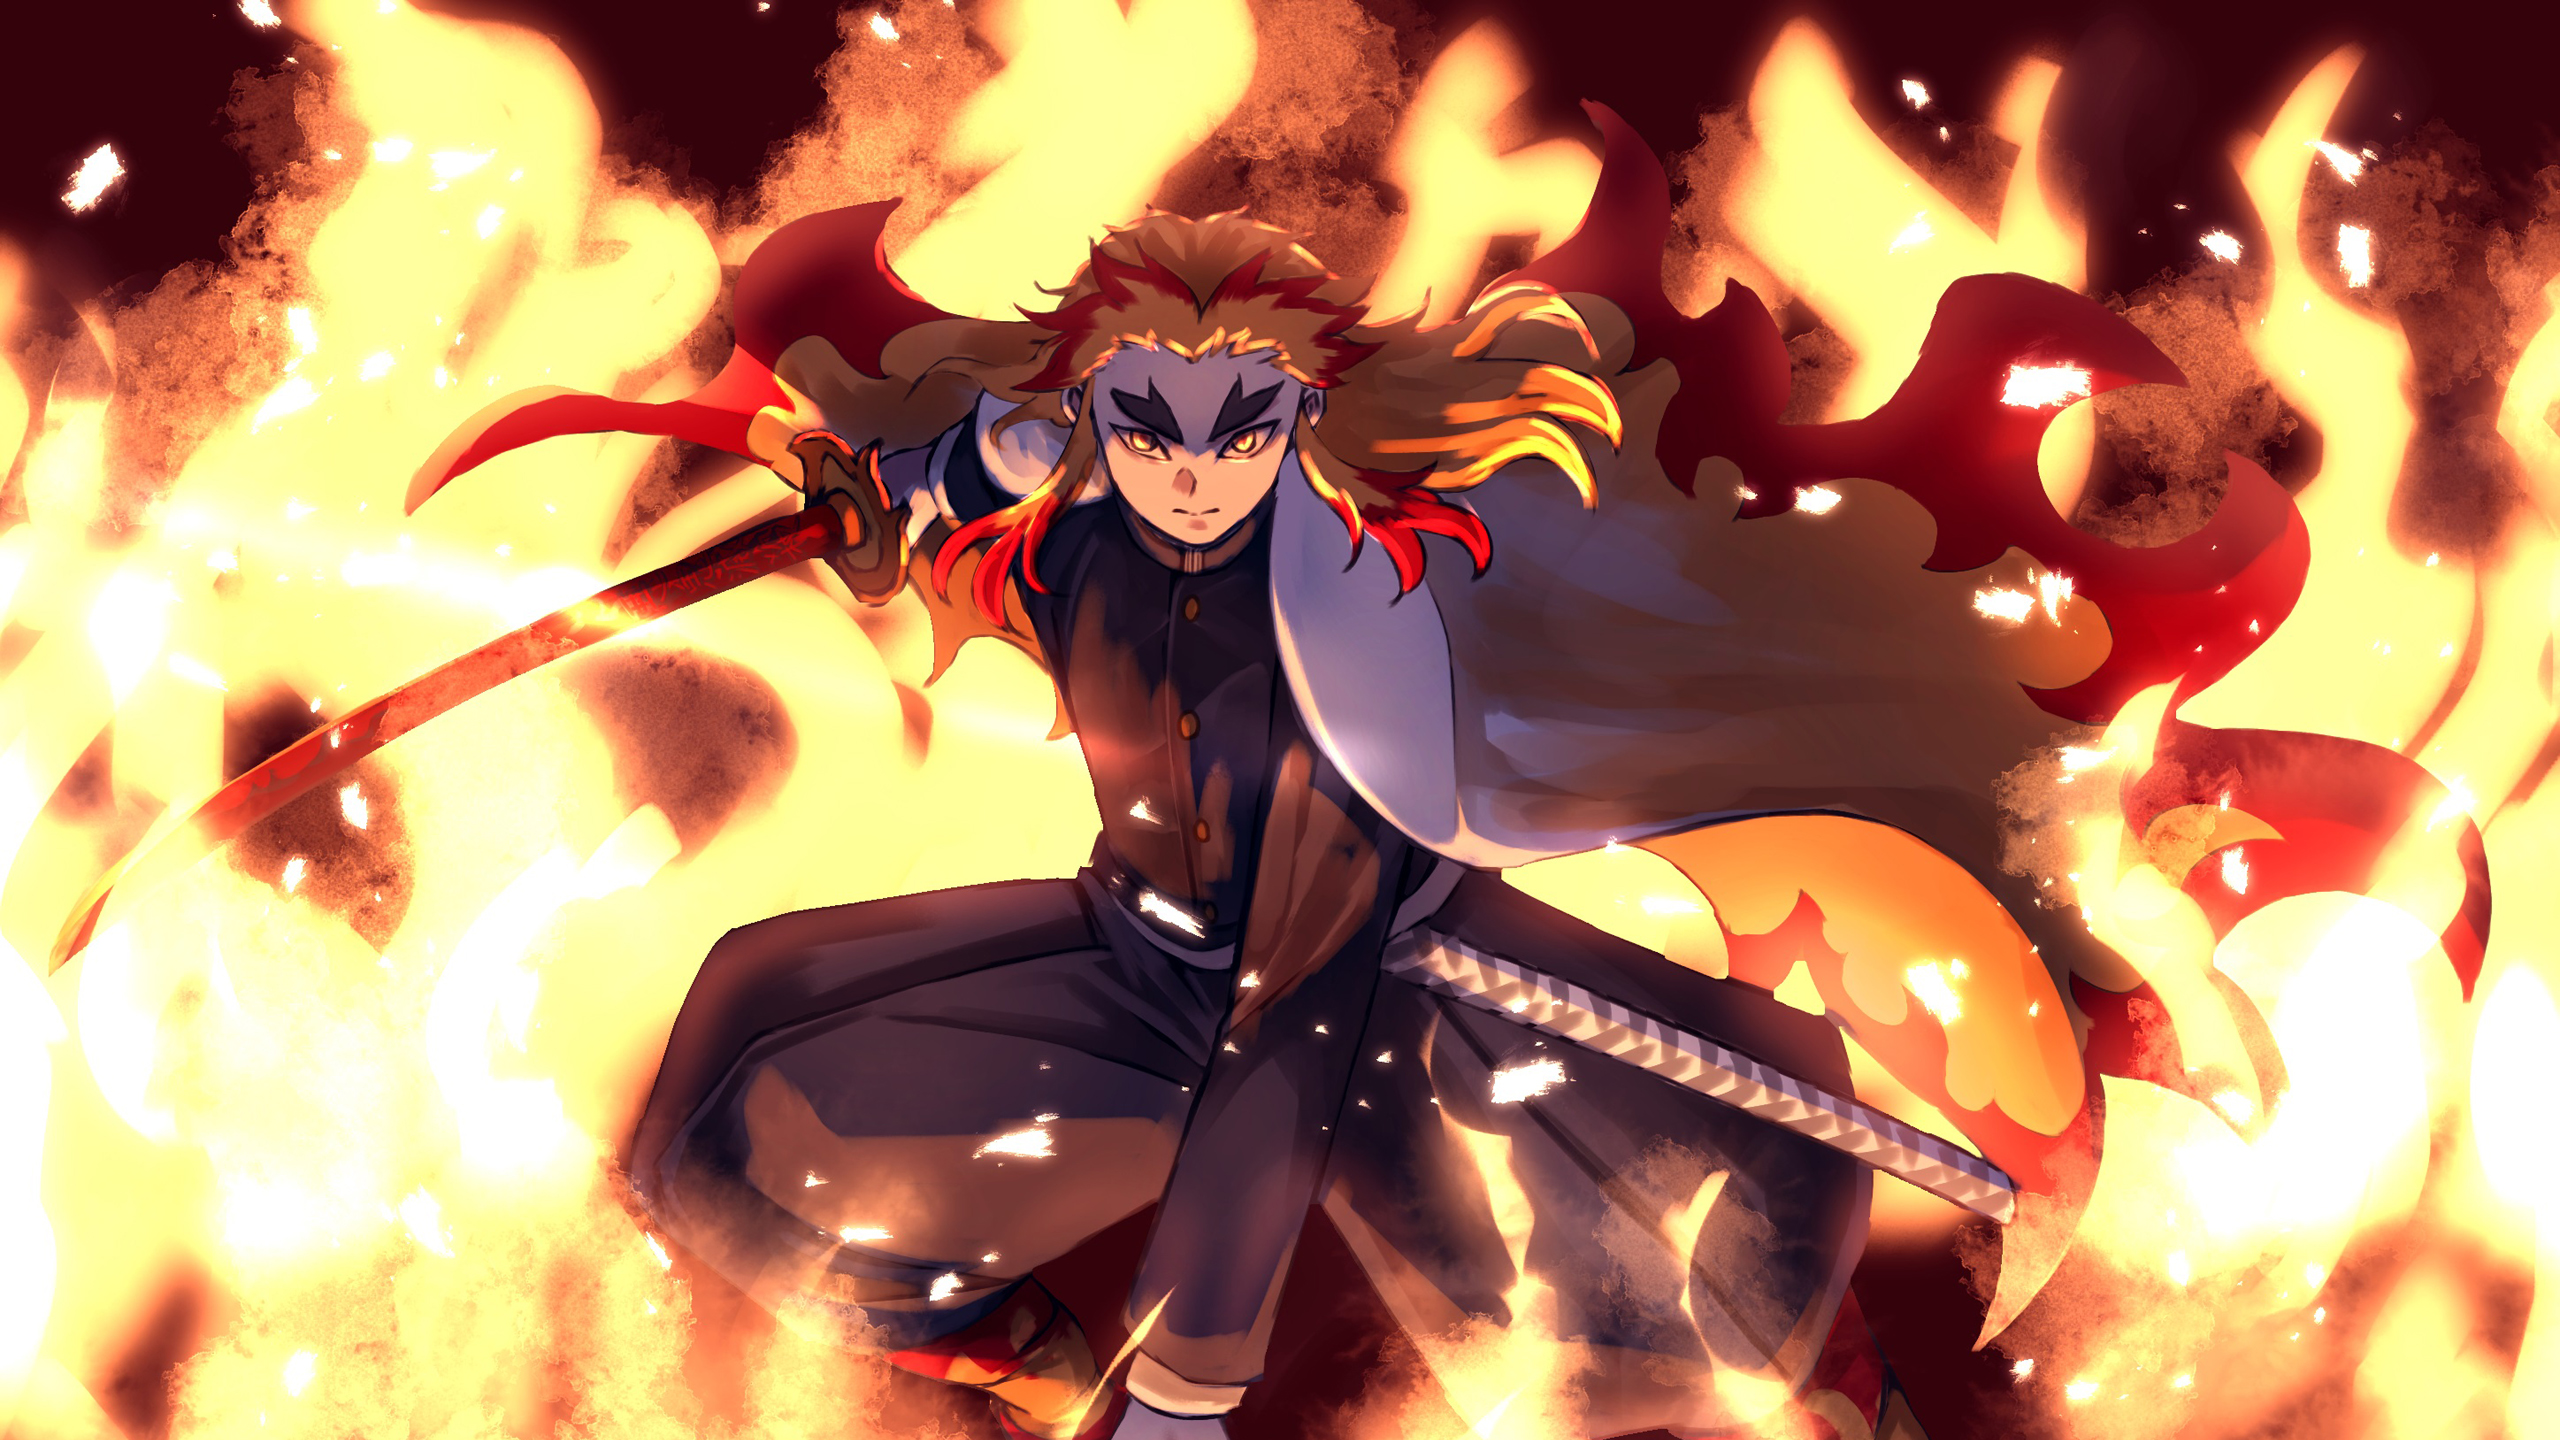 Demon Slayer Kyojuro Rengoku Jumping With Sword On Fire 2K Anime